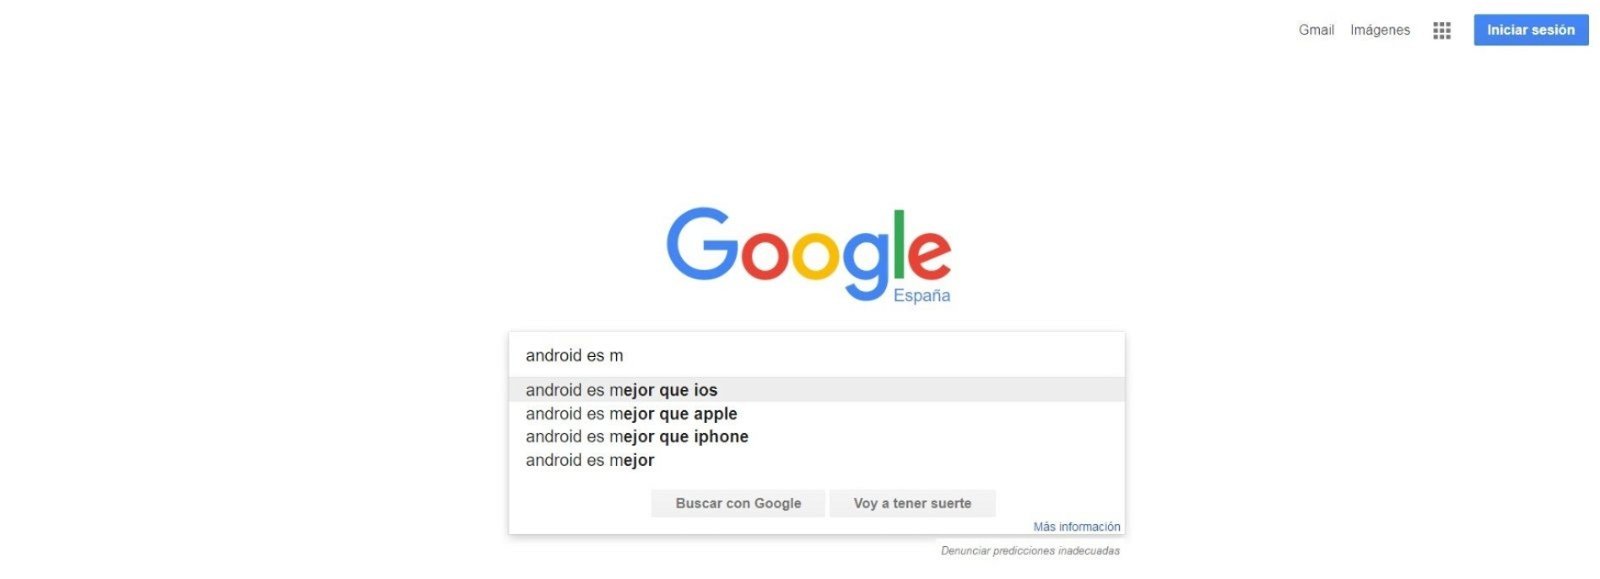 Android es mejor que ios